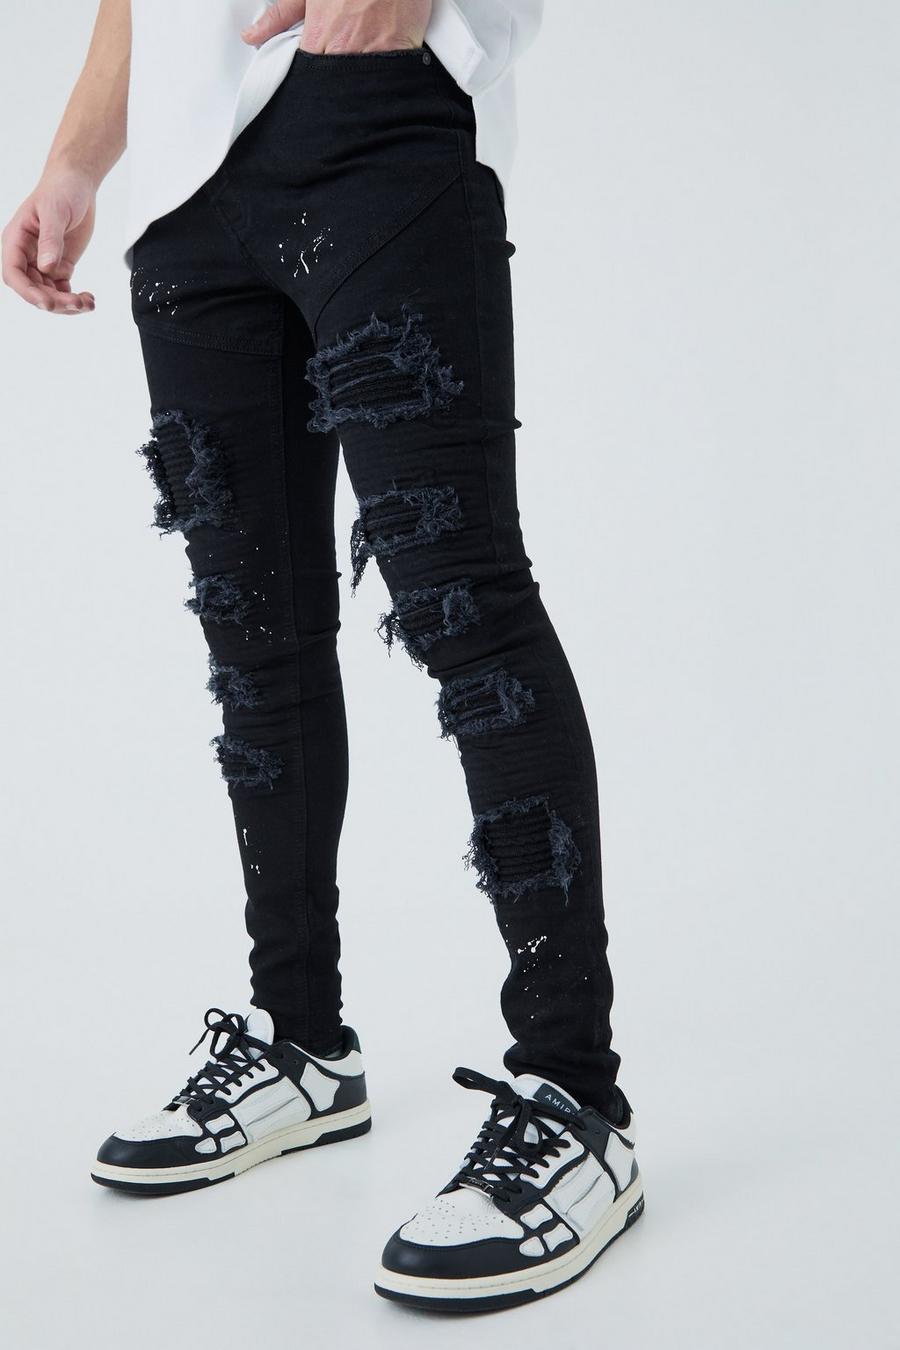 Men's Paint Splatter Jeans, Men's Paint Splattered Jeans